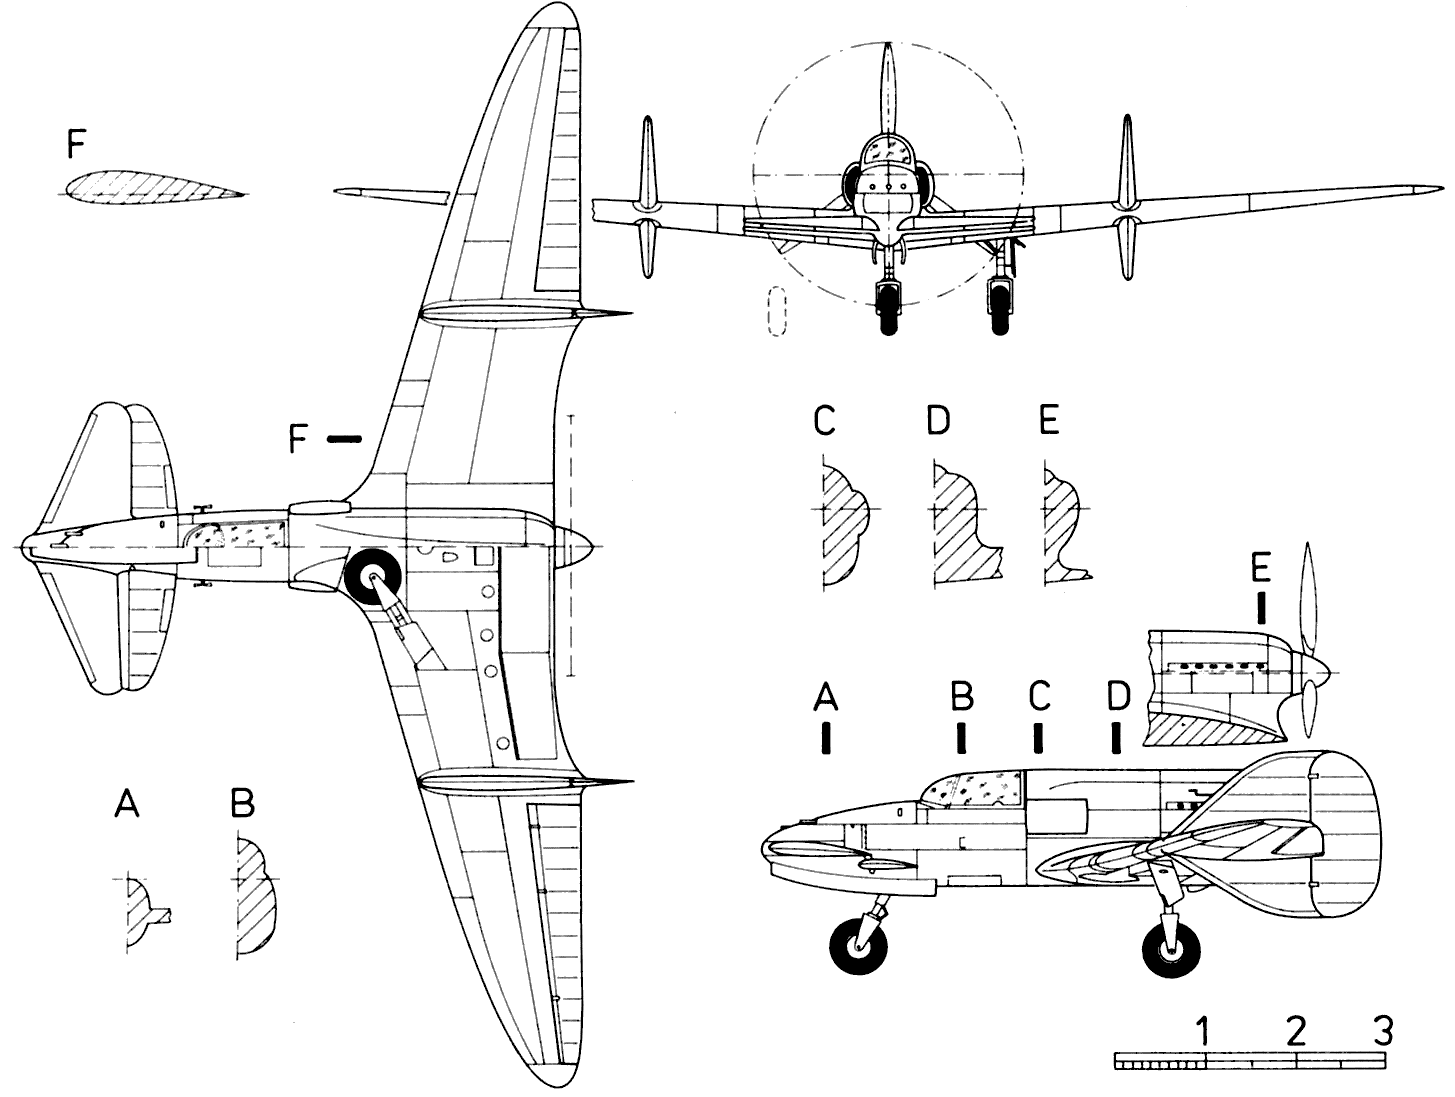 Ambrosini SS.4 blueprint